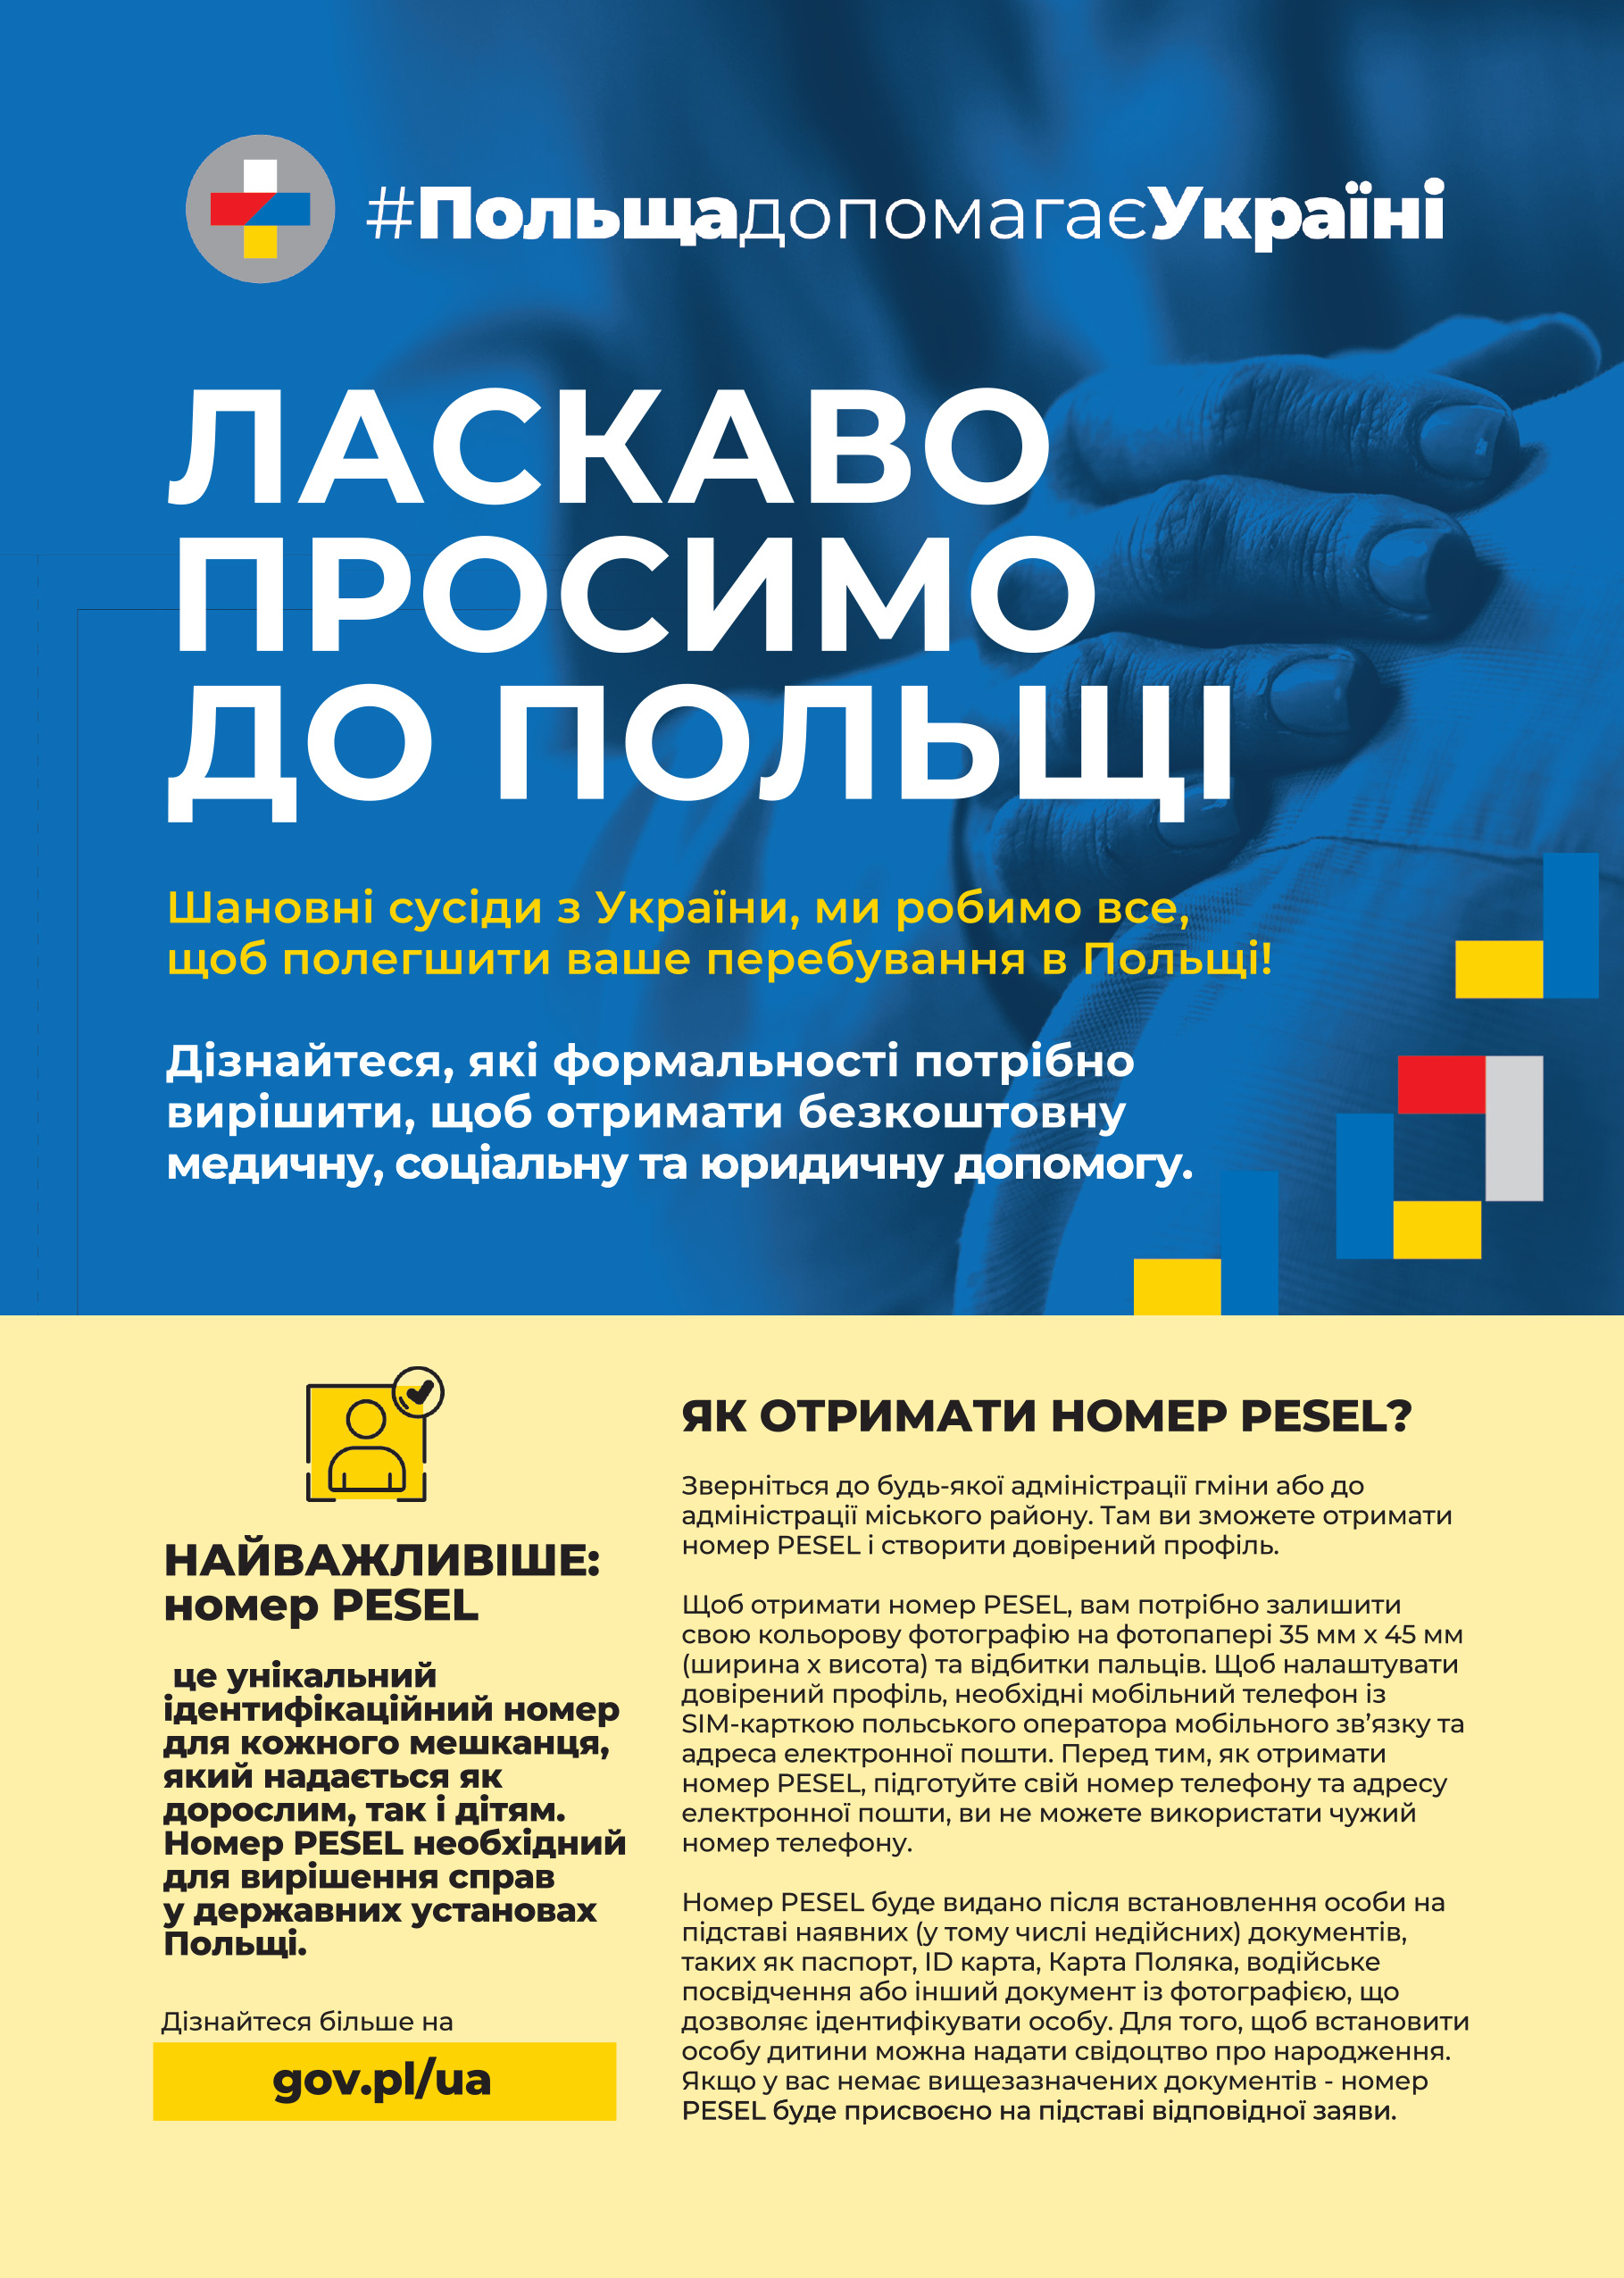 Ulotka dotycząca nadawania numeru PESEL dla obywateli Ukrainy uciekających przed wojną na terenie ich państwa, pierwsza strona.